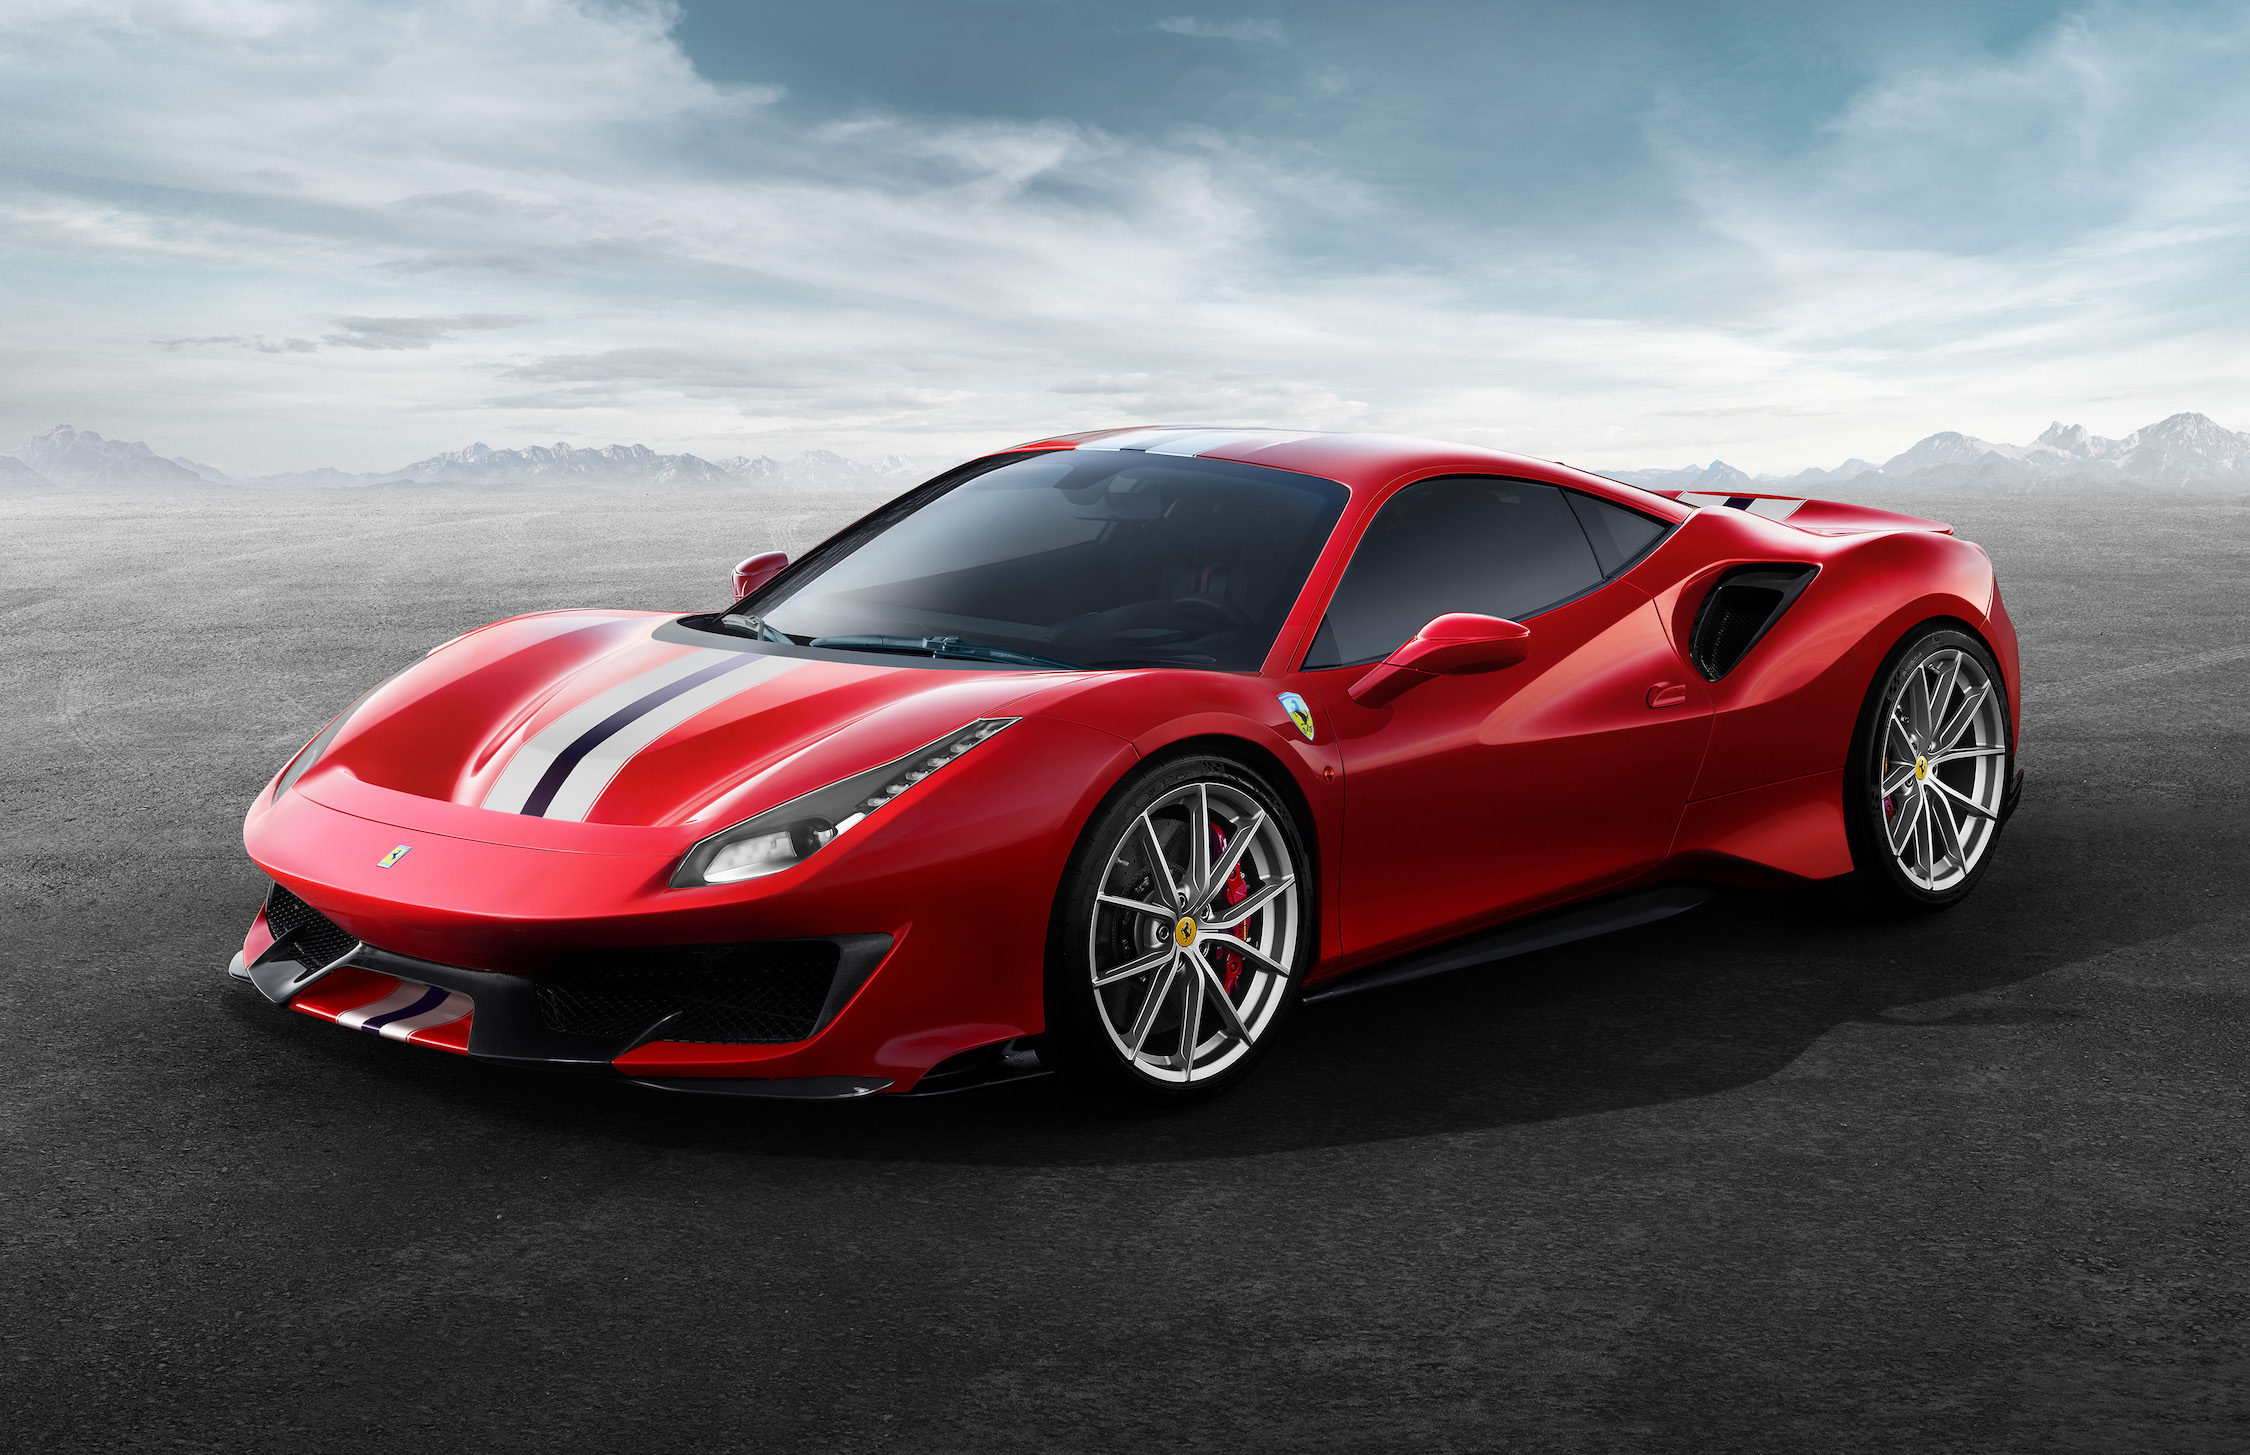 Enzo Ferrari’s 120th birth anniversary and New Ferrari 488 Pista